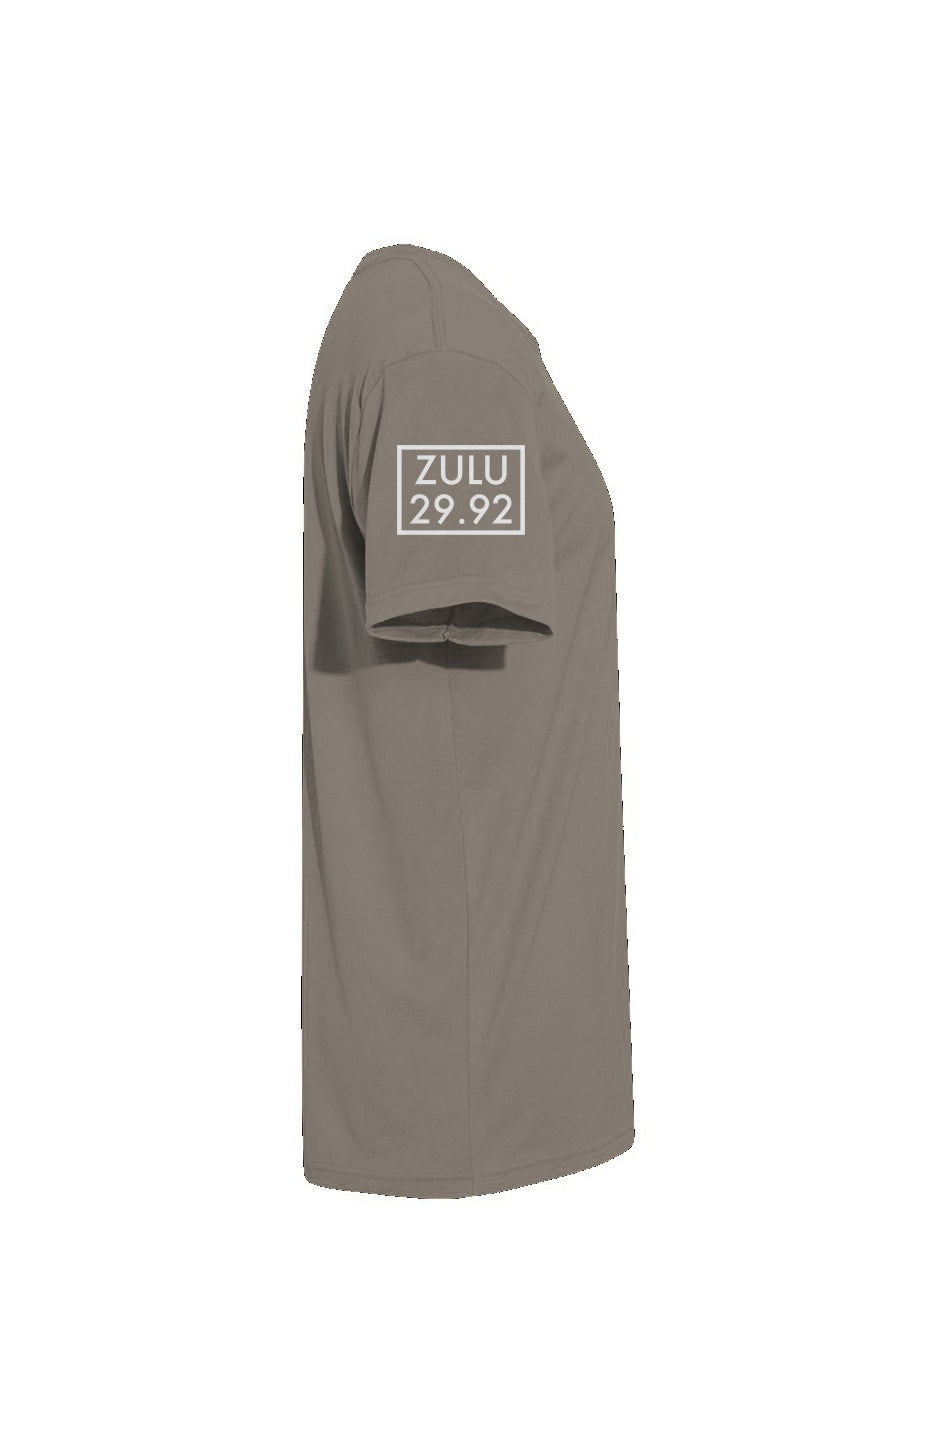 How I roll - Zulu - T-shirt